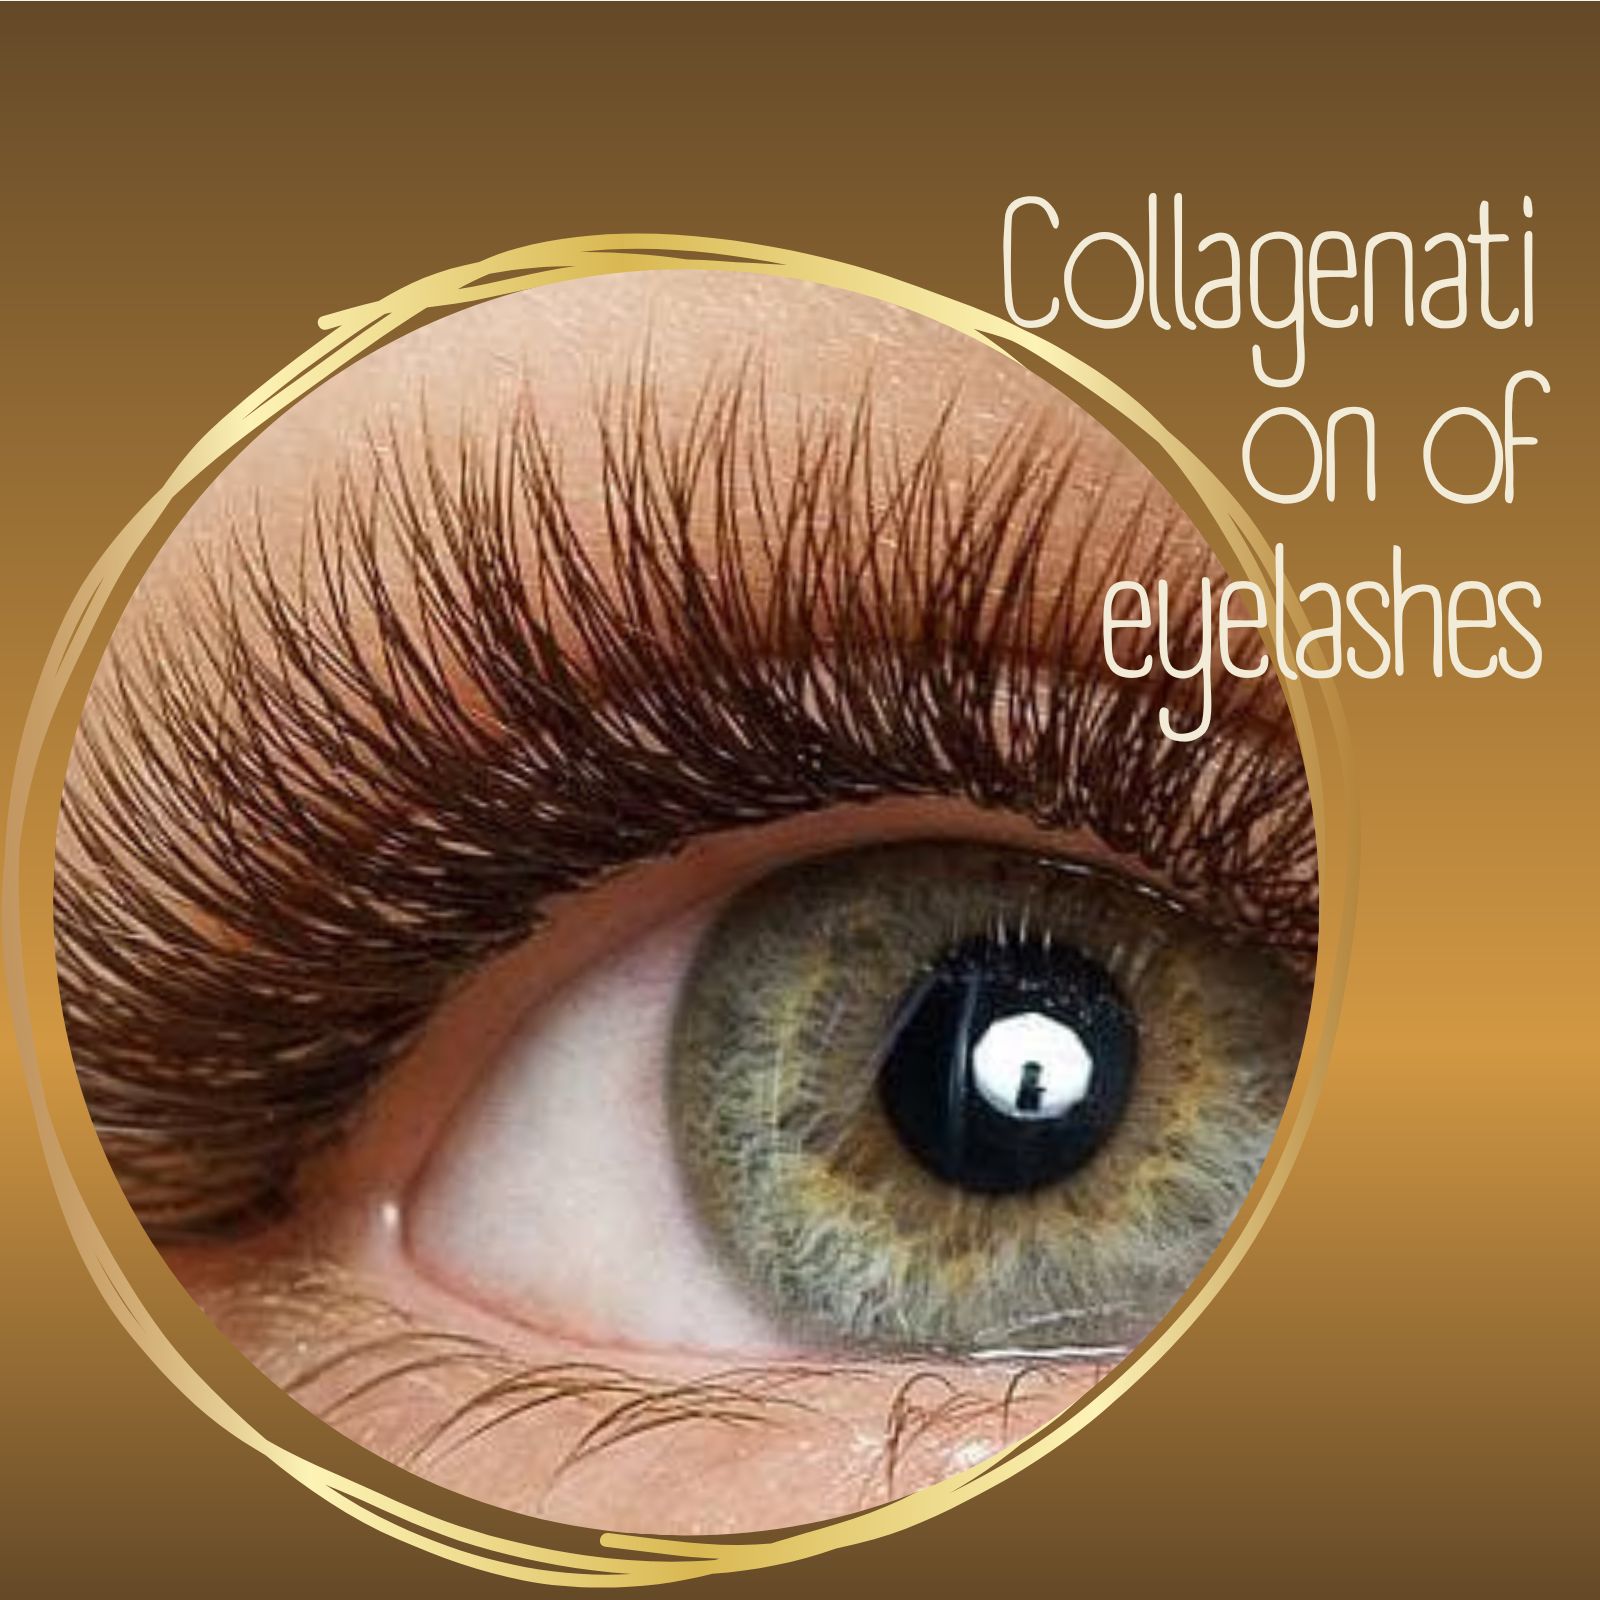 Collagenation of eyelashes